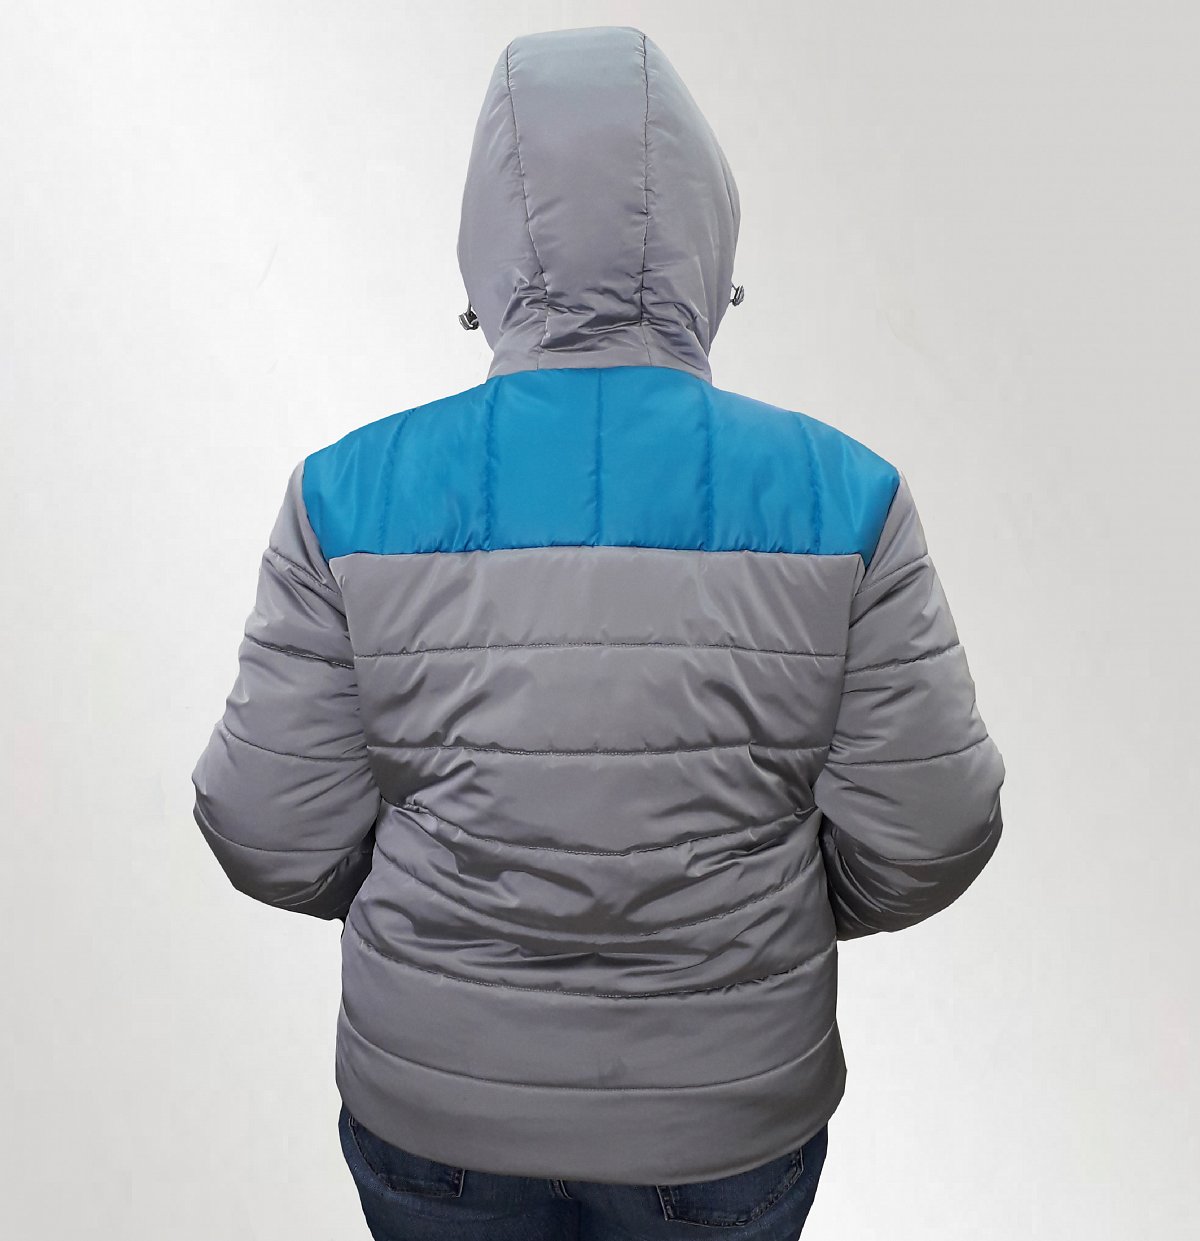 Пошив курток - пример модели куртка зимняя с капюшоном